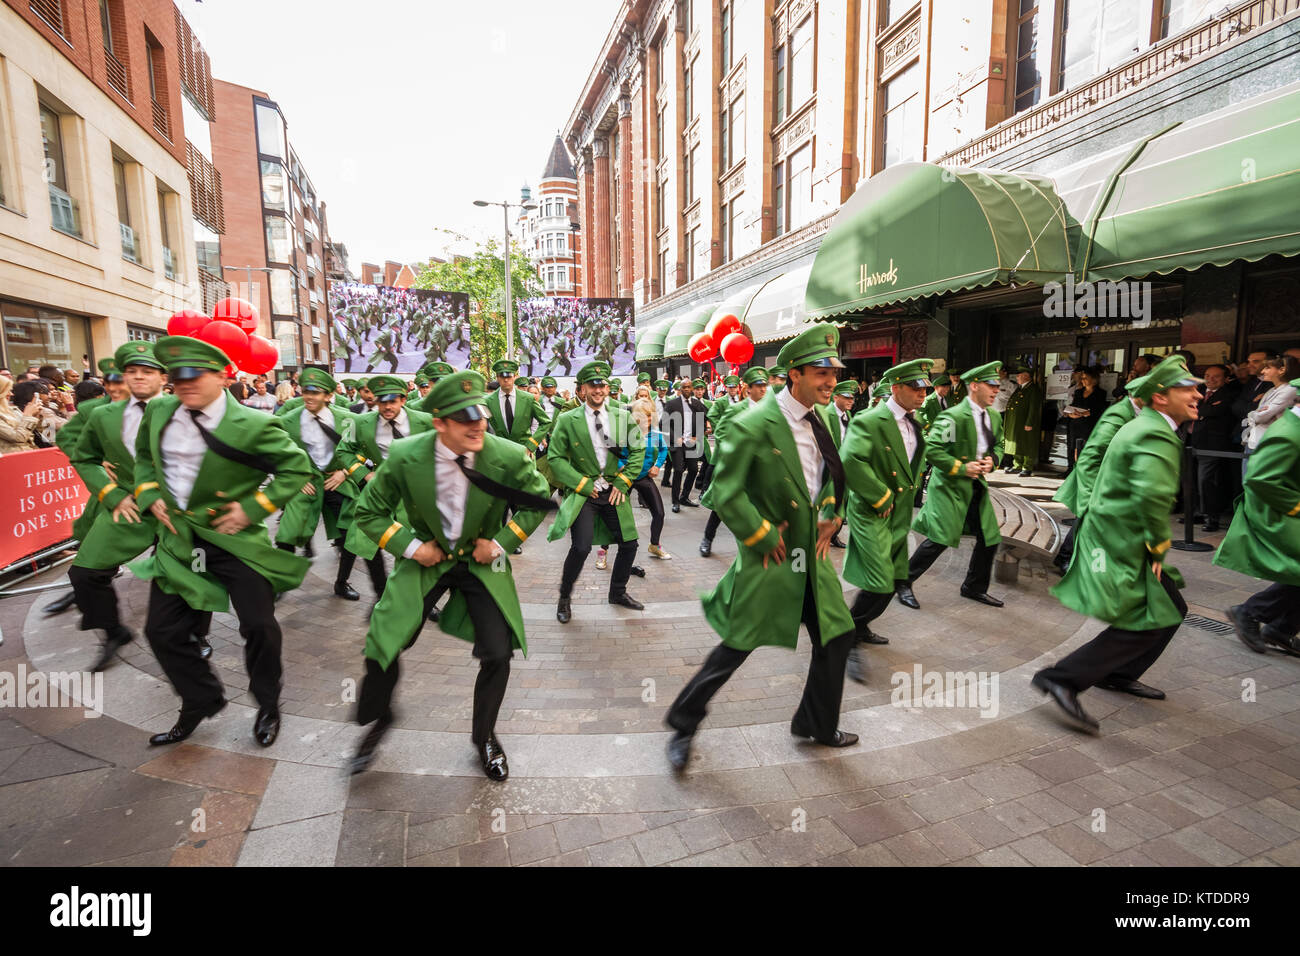 Harrods Summer Sale es lanzado con un hombre verde flash mob dance extravaganza para las colas de espera de los clientes. Foto de stock